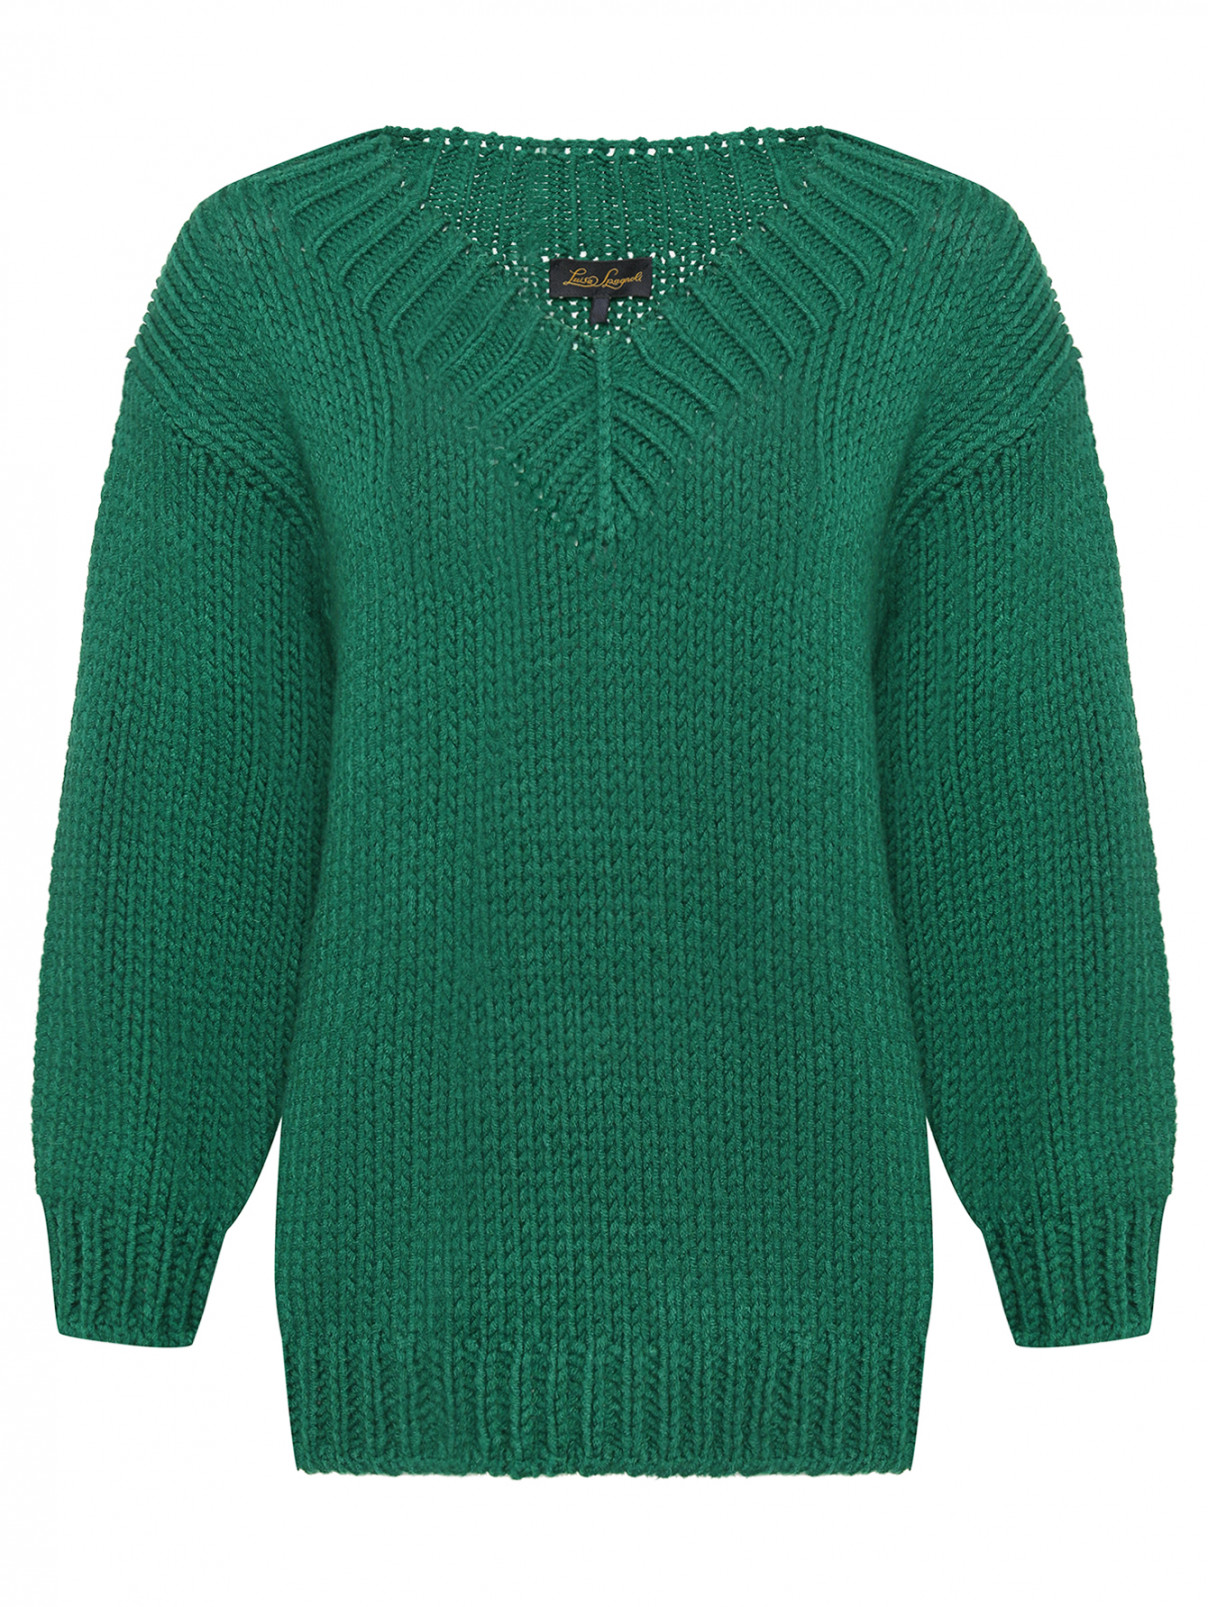 Джемпер из шерсти крупной вязки Luisa Spagnoli  –  Общий вид  – Цвет:  Зеленый